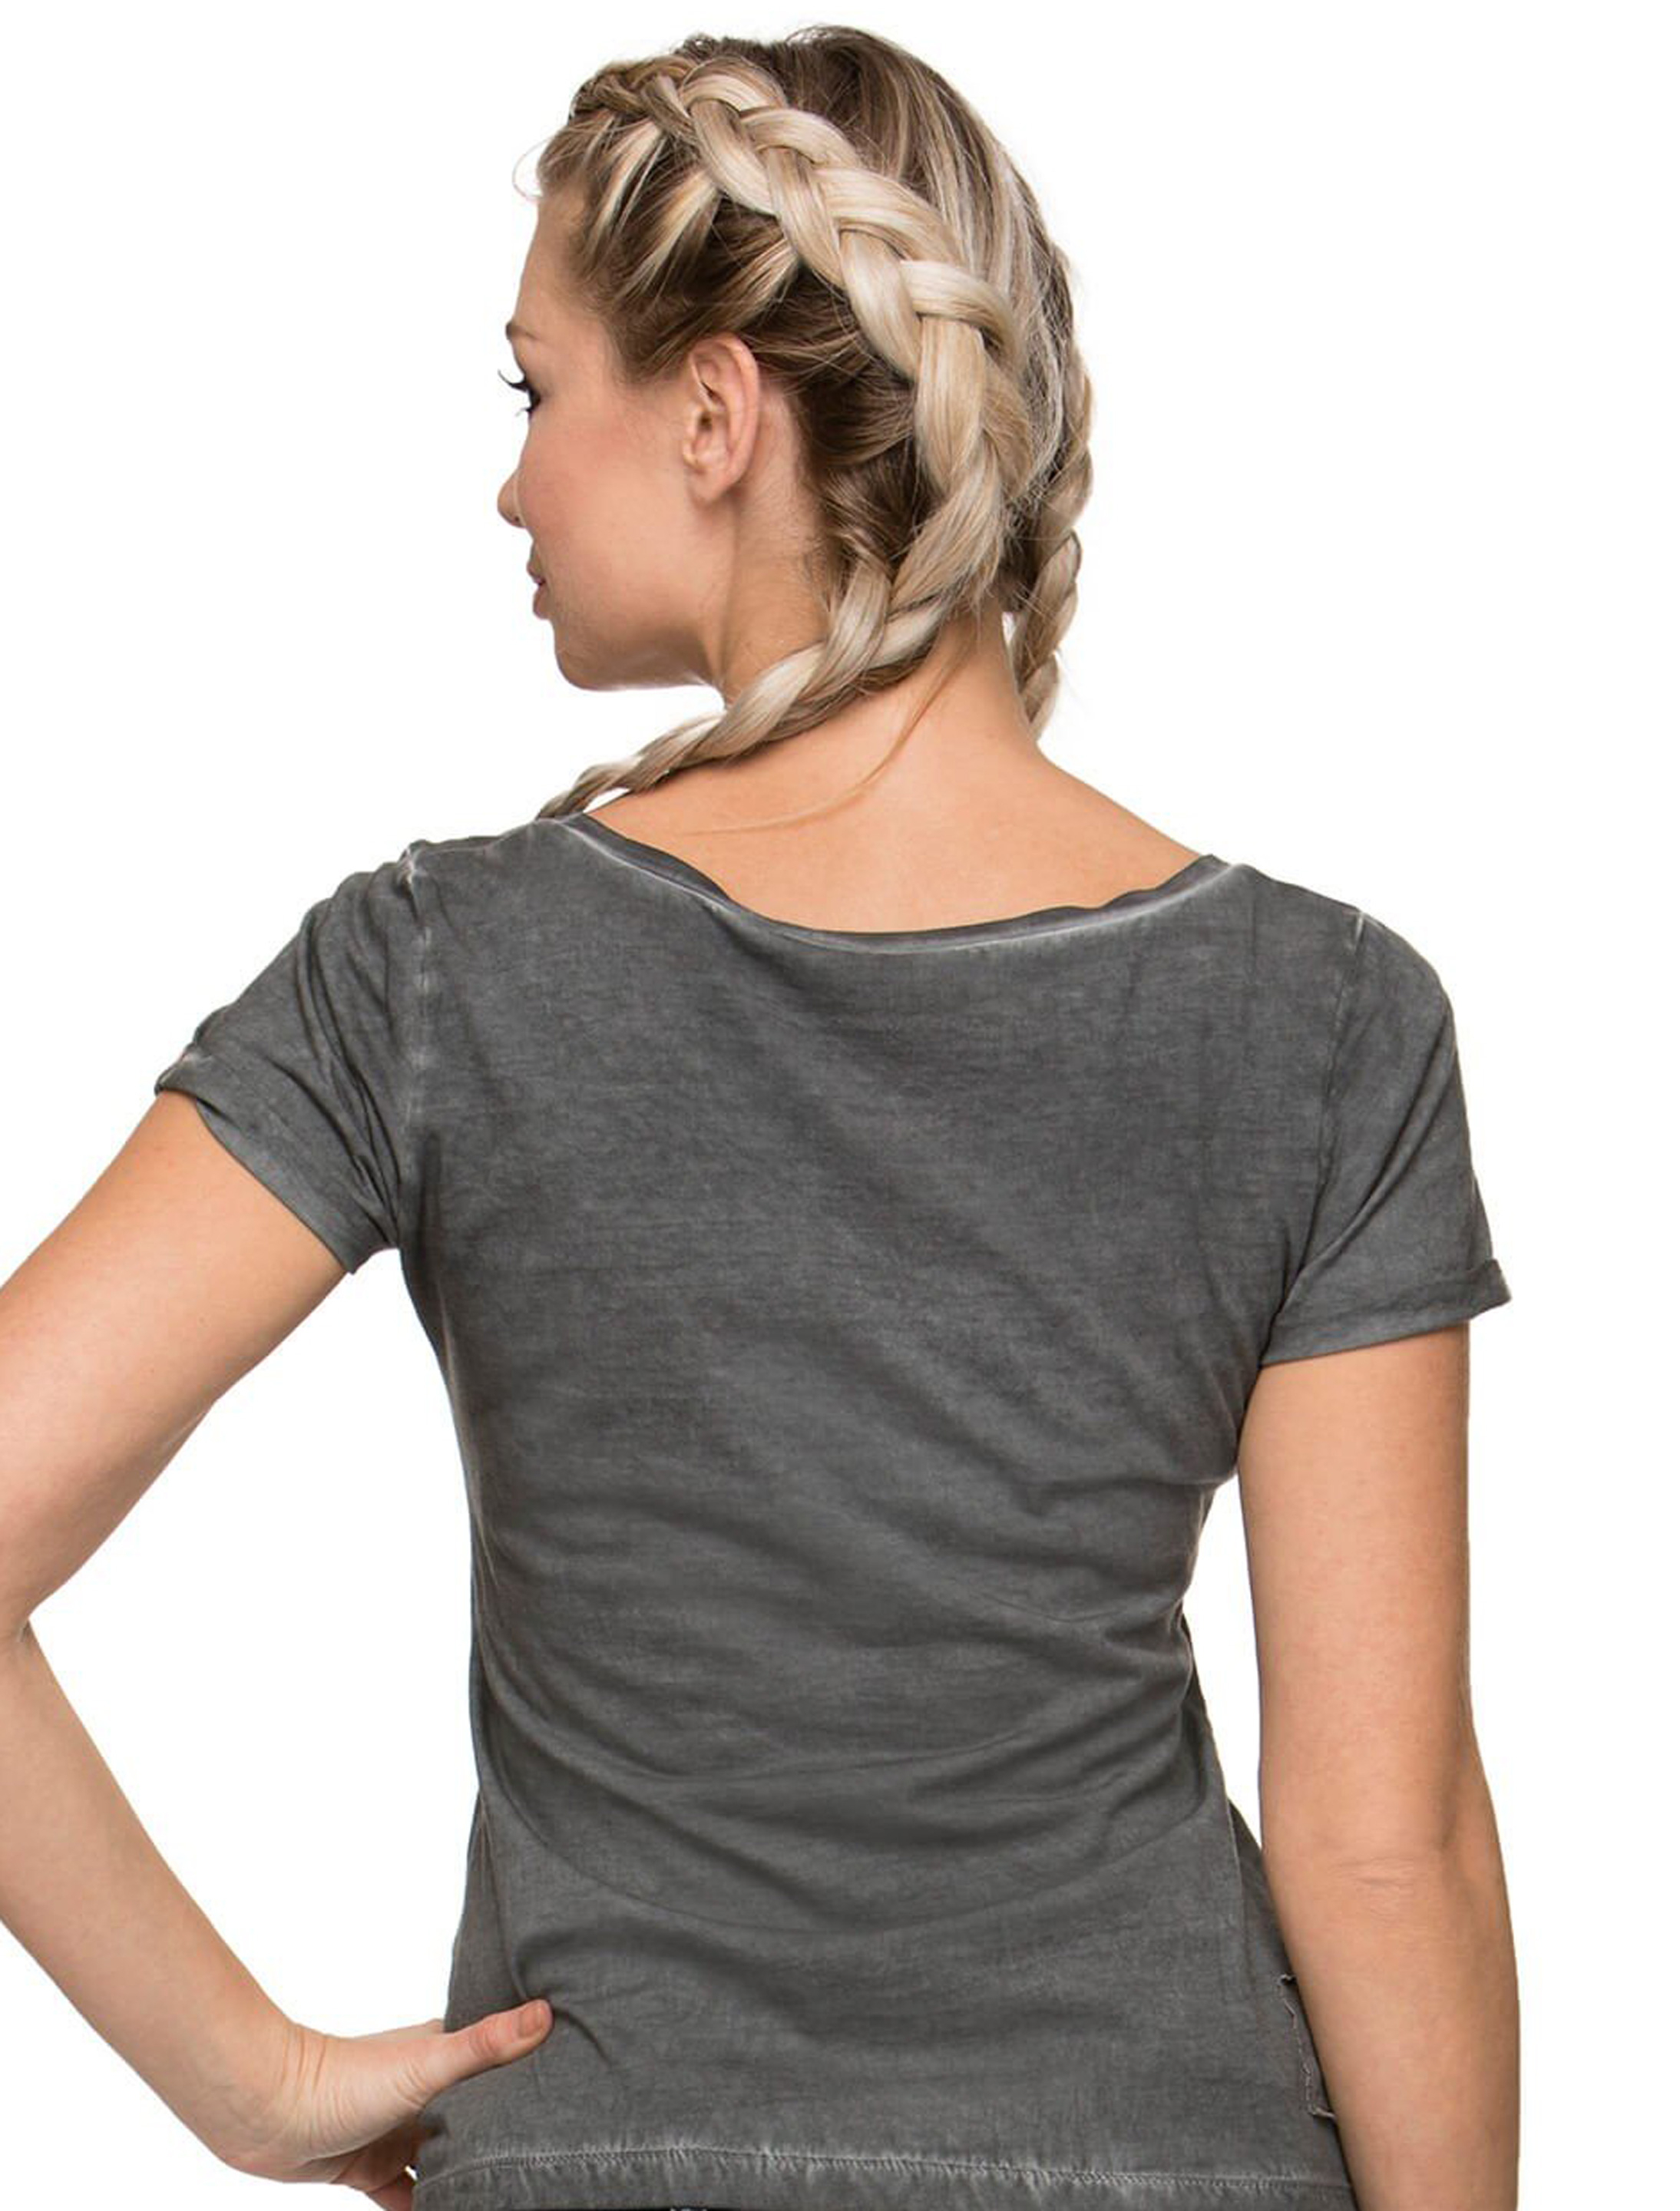 Trachten T-Shirt Gracy Damen grau XL